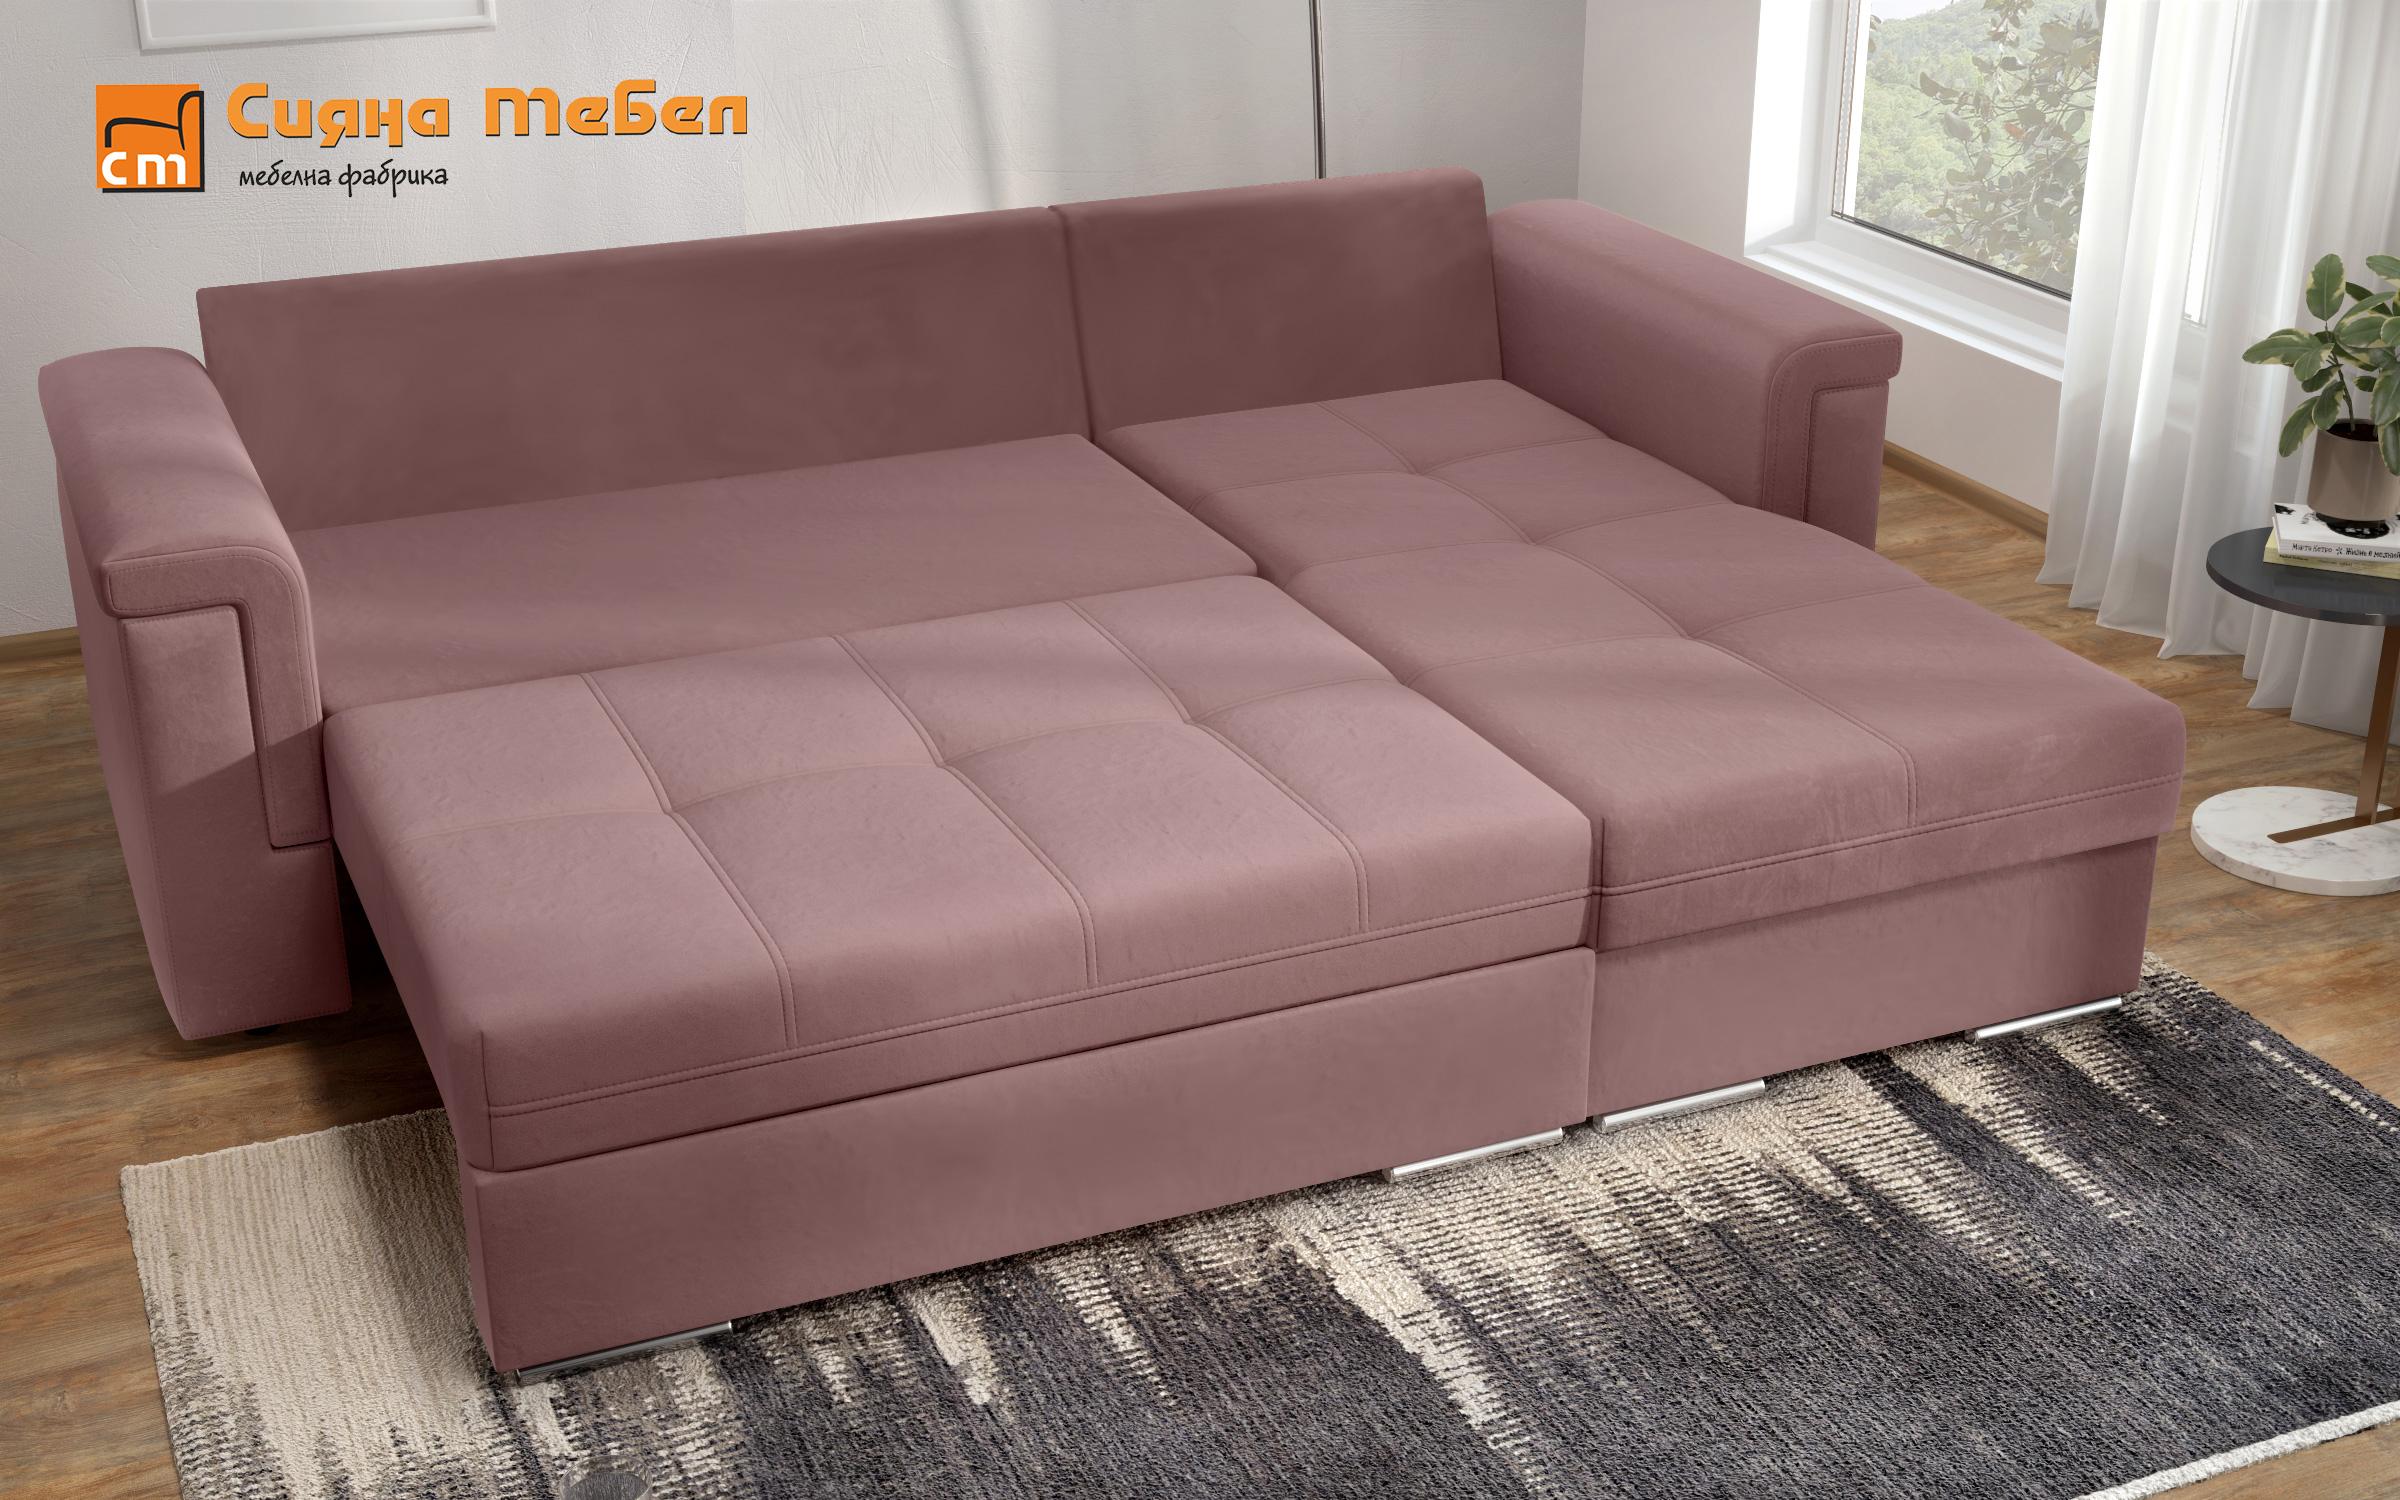 Γωνιακός καναπές Heaven, ροζ + ανοιχτό ροζ  8